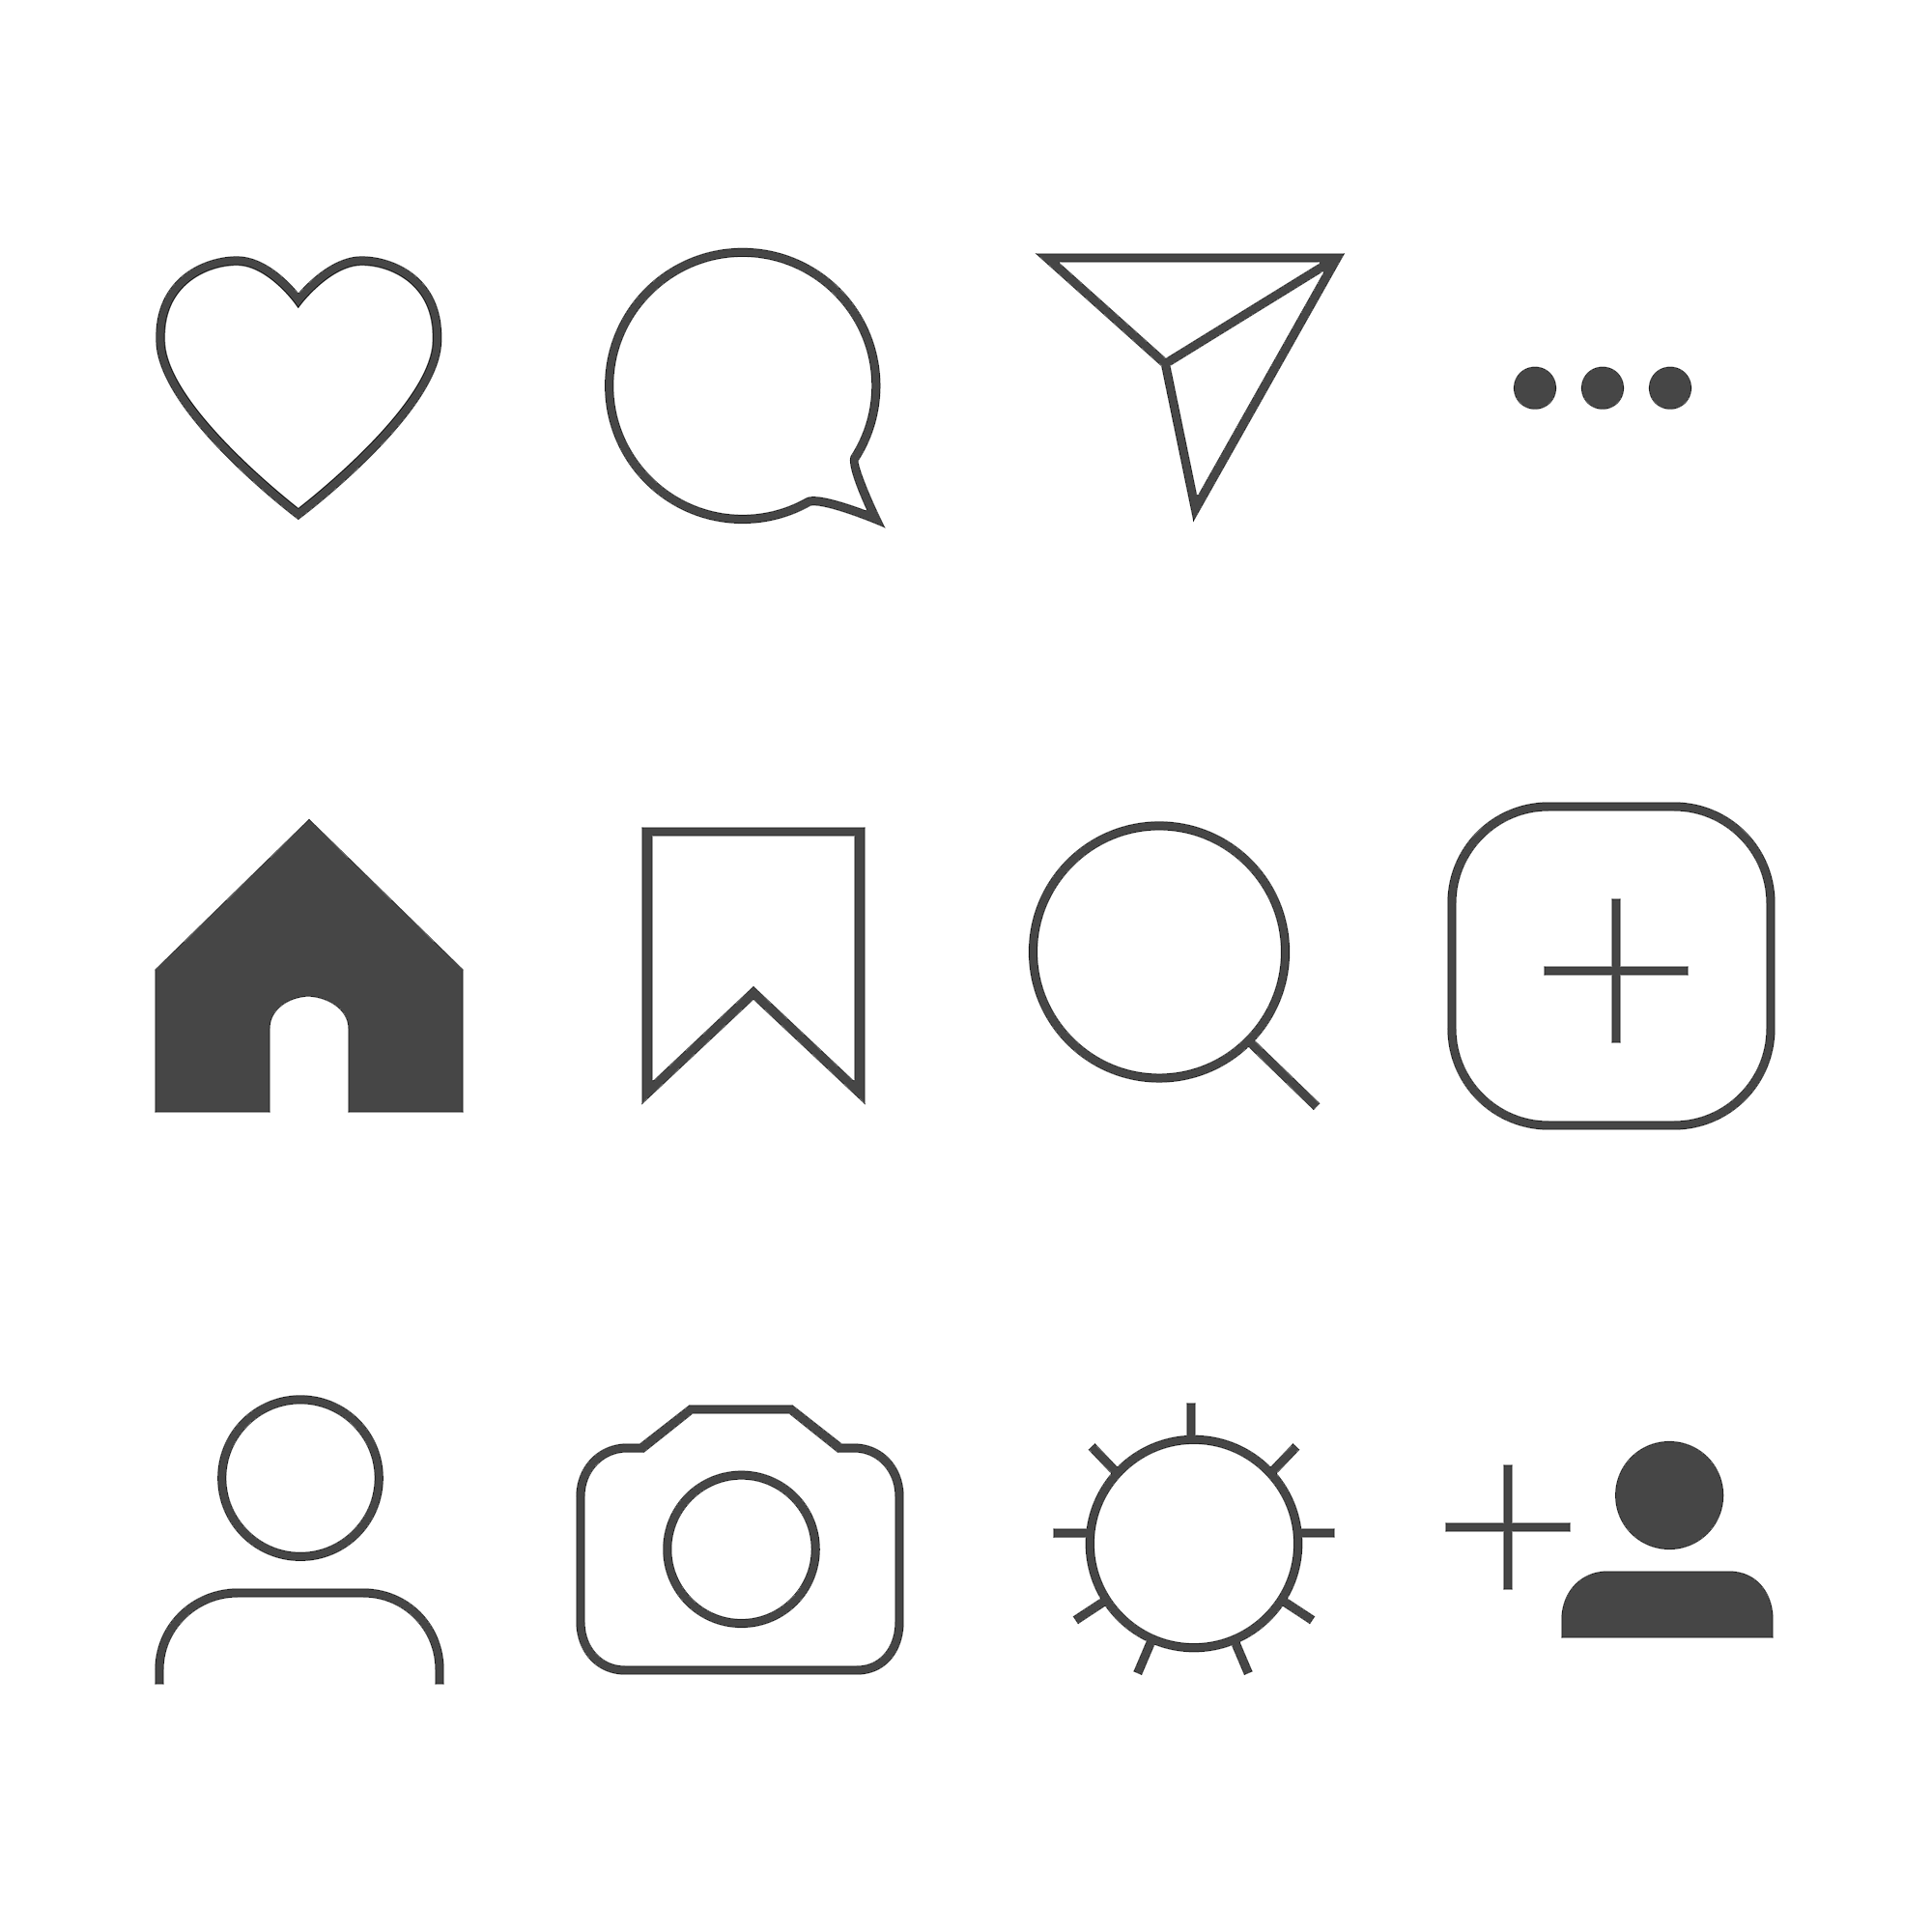 Instagram Symbole Unter Den Bildern Das Bedeuten Die Icons - Vrogue